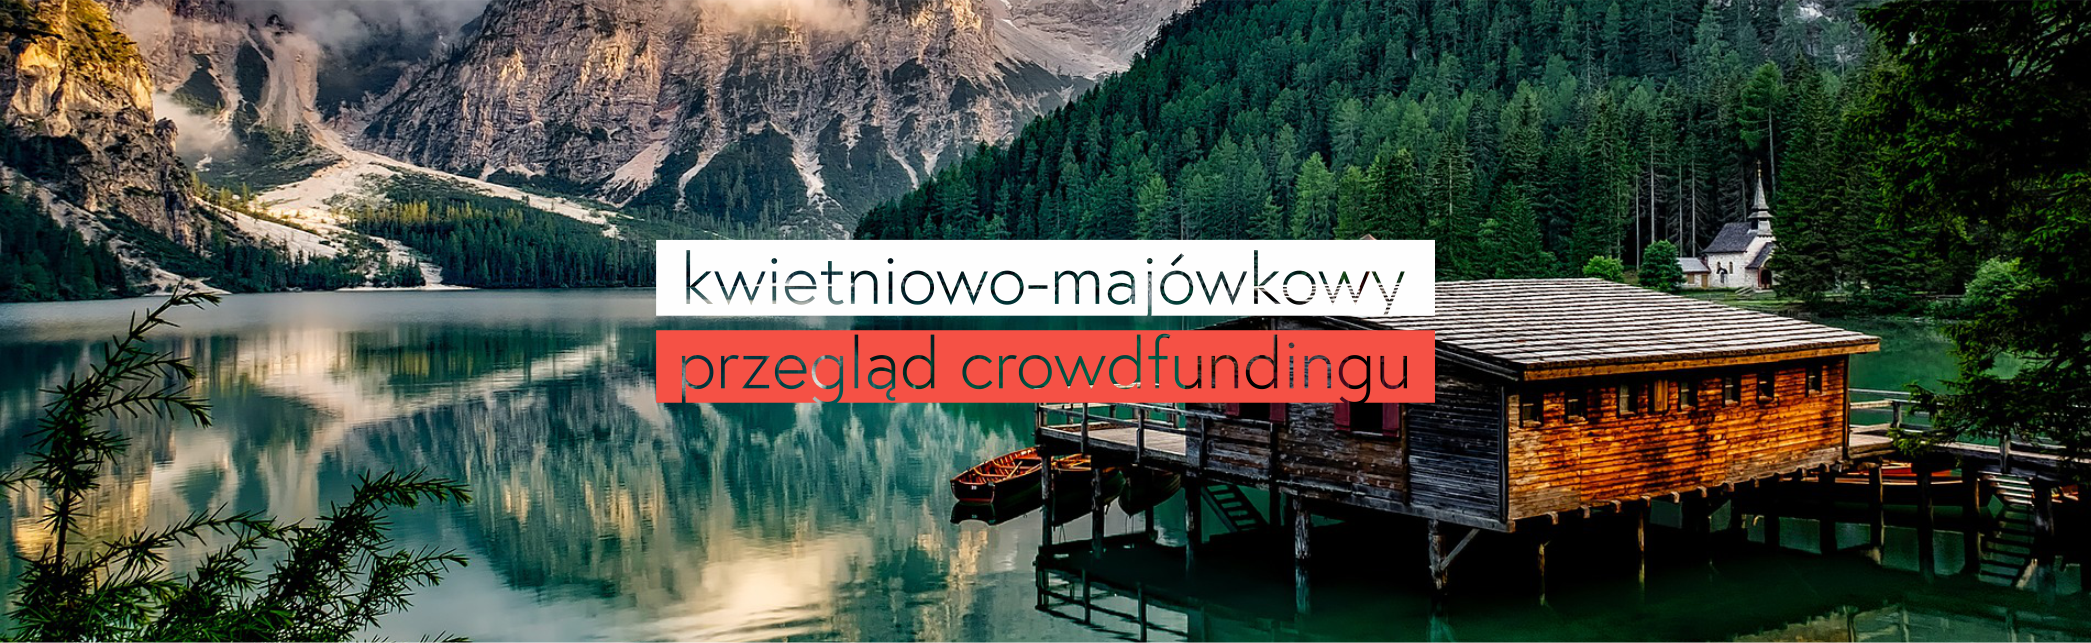 Kwietniowo-majówkowy przegląd crowdfundingu